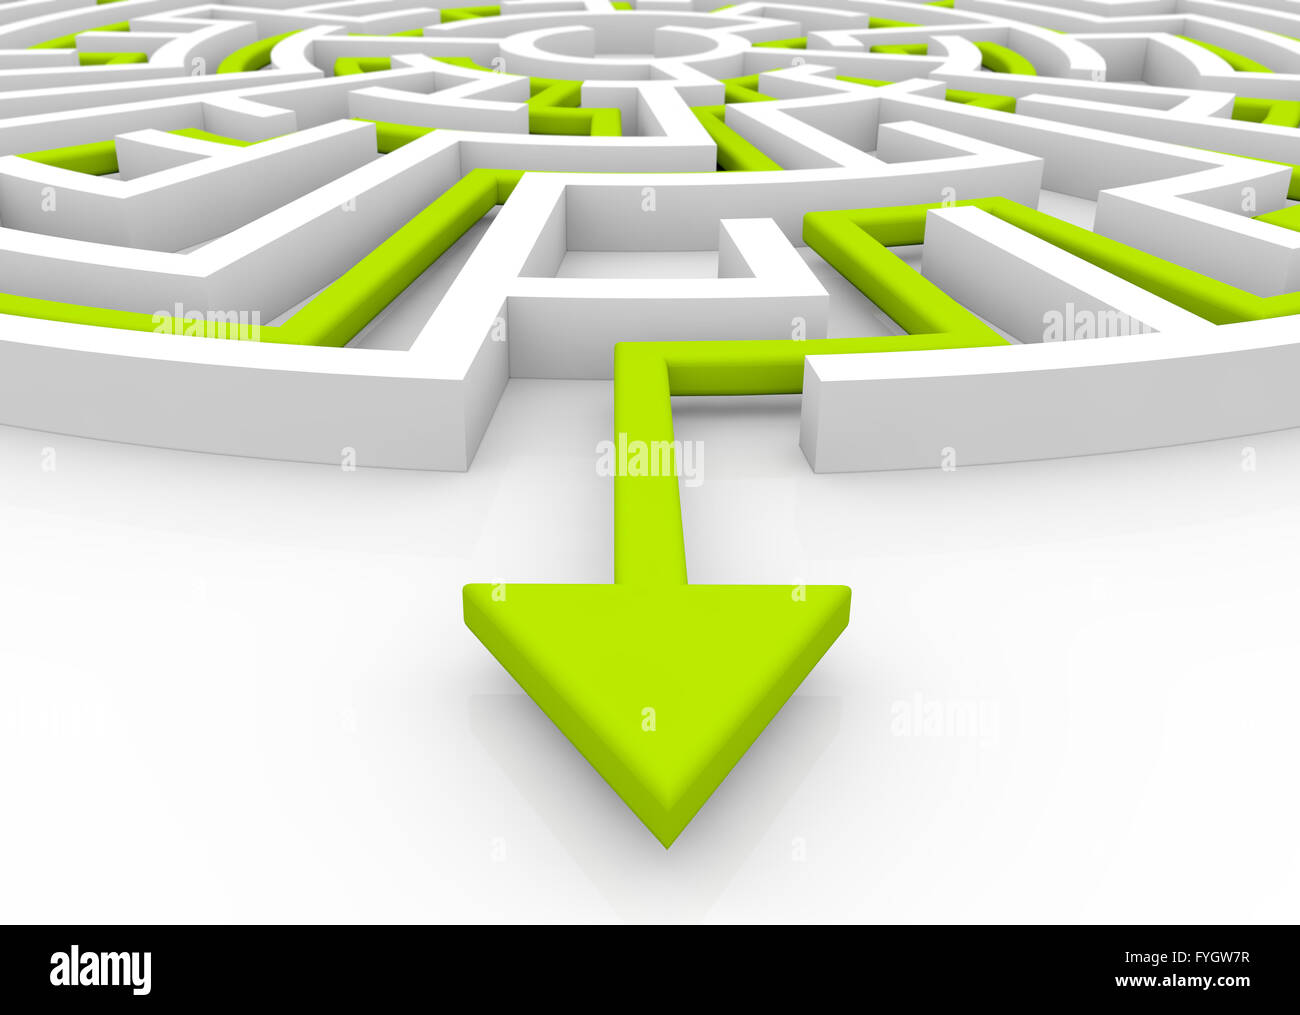 El concepto de la solución: flecha verde muestra la ruta final del laberinto Foto de stock